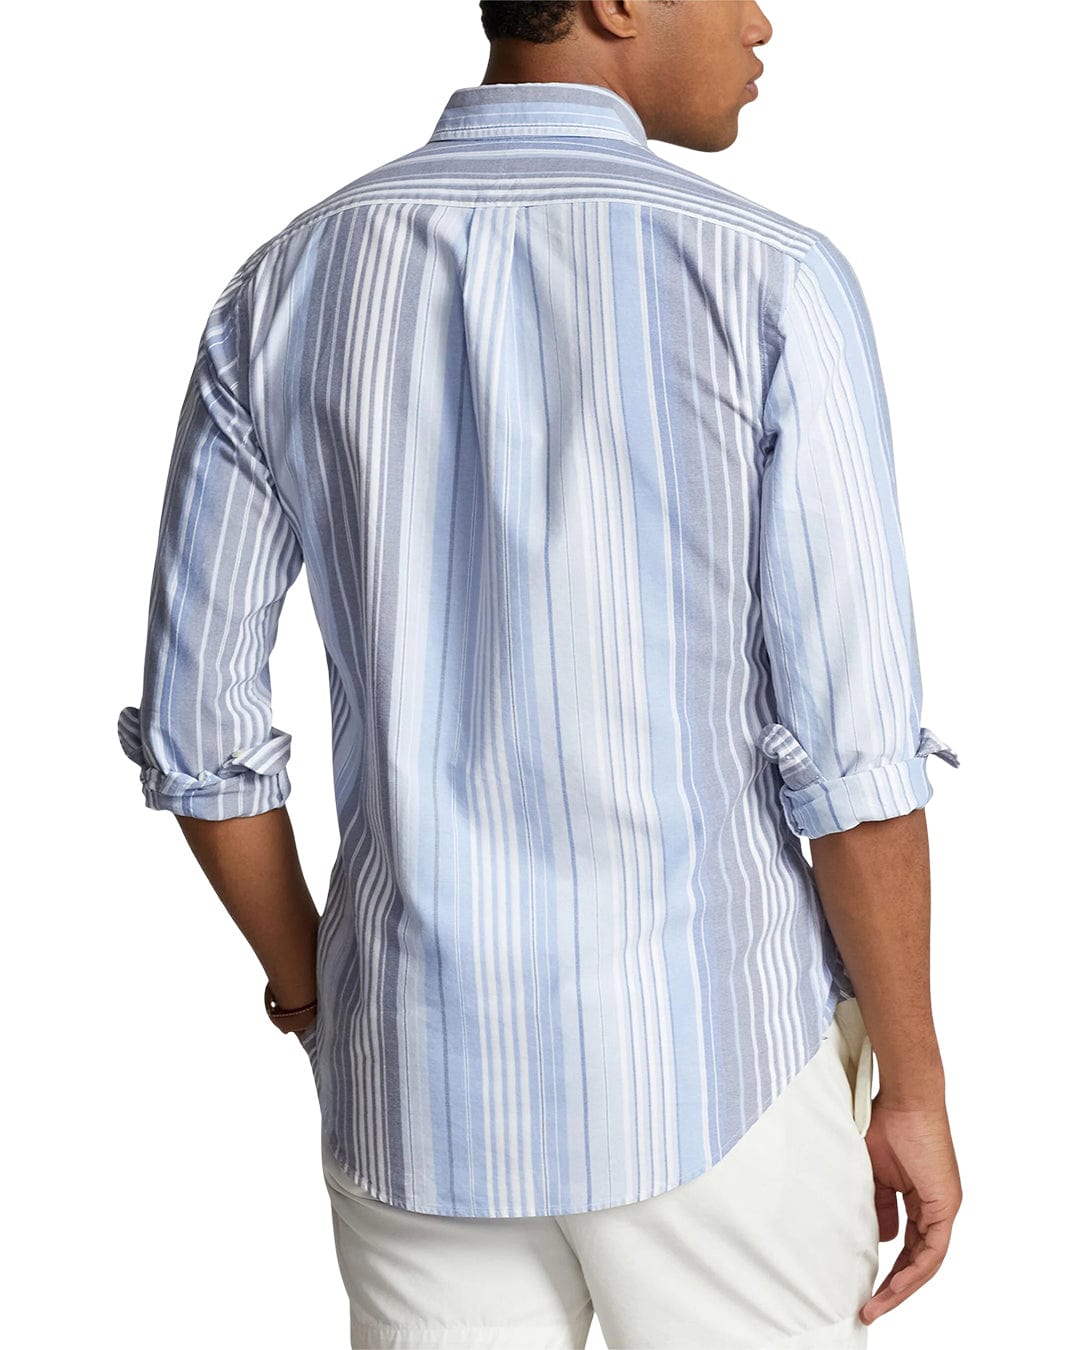 Polo Ralph Lauren Shirts Polo Ralph Lauren Blue Pattern Striped Shirt